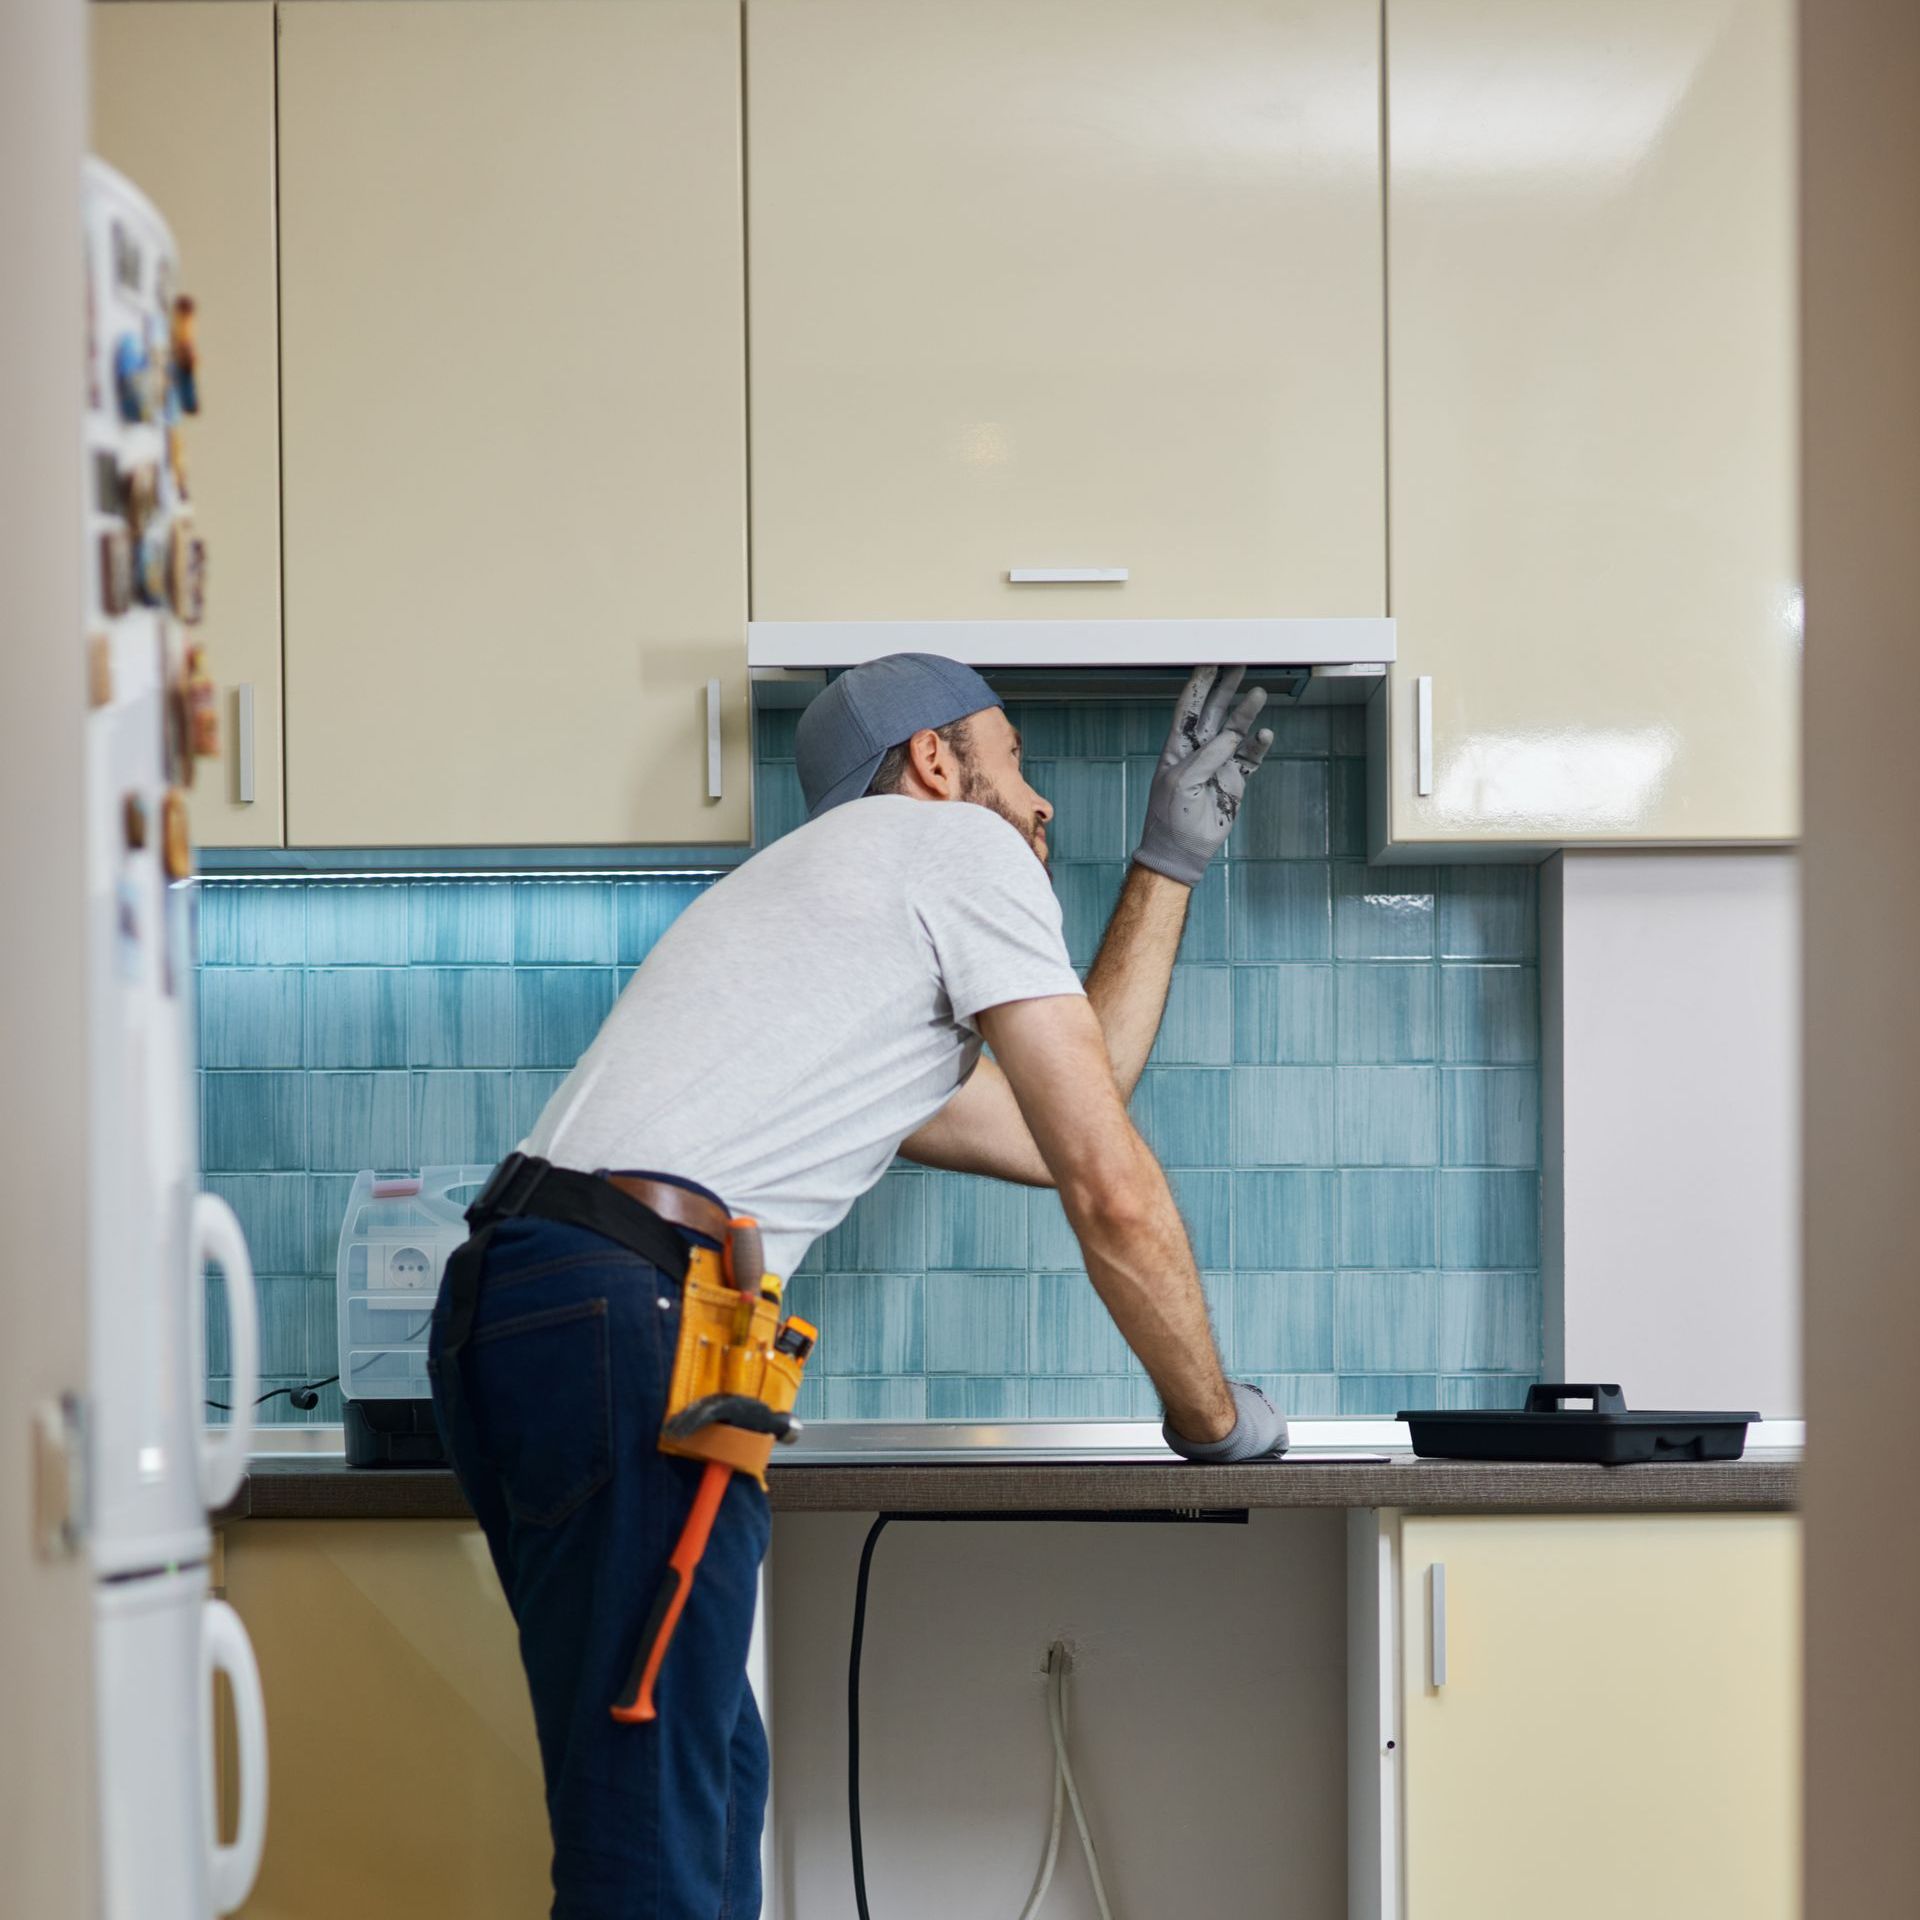 Man installing appliance